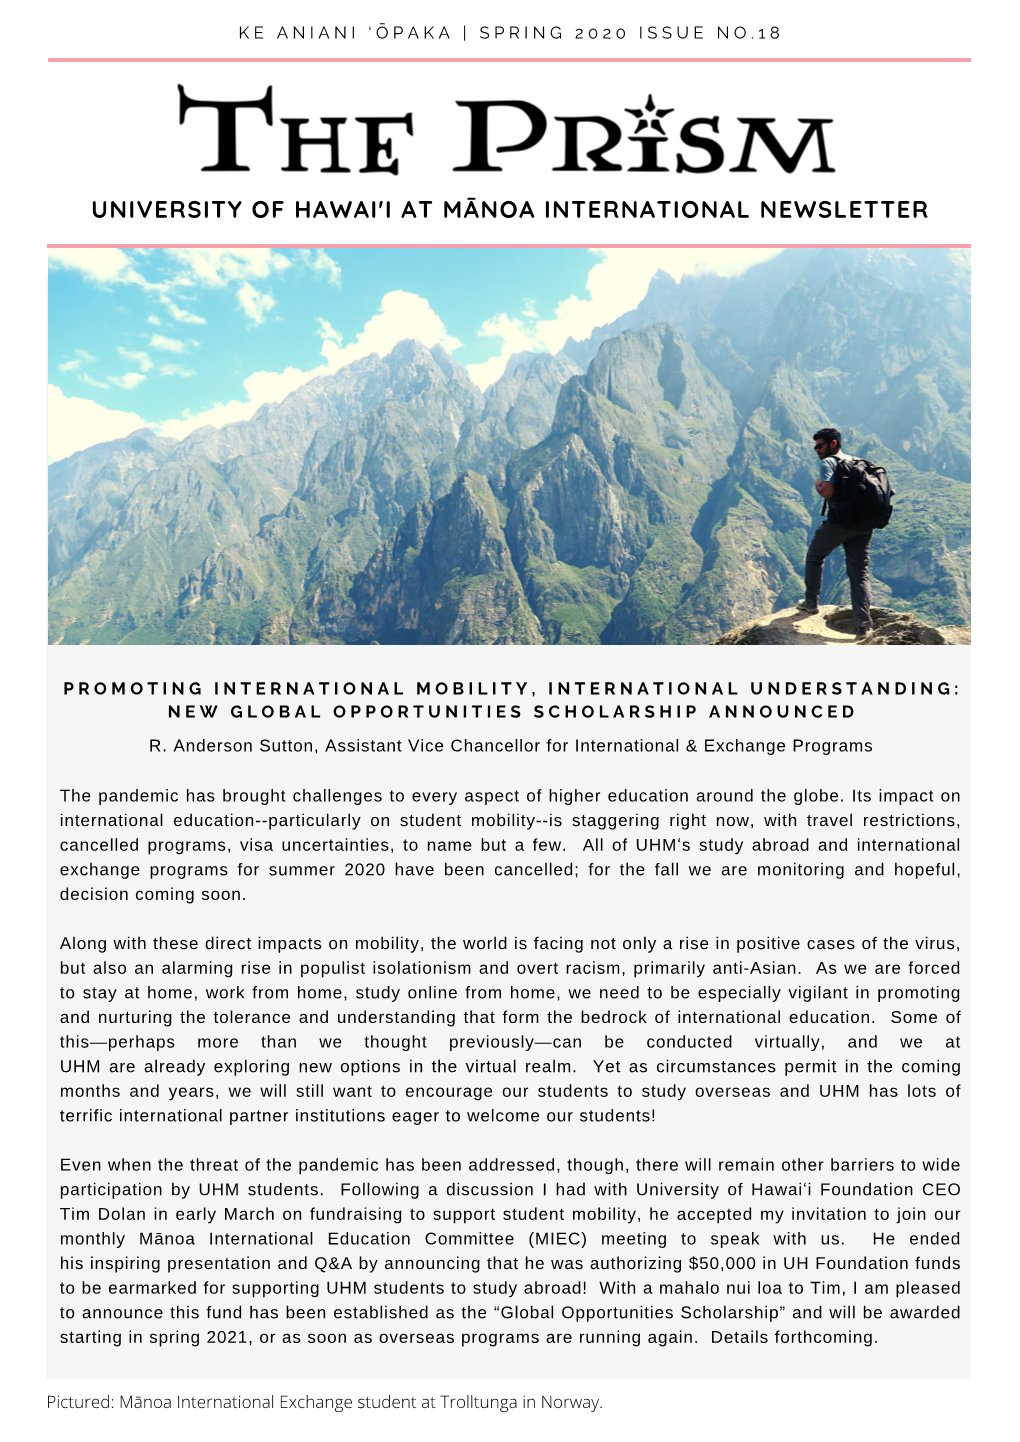 The Prism UHM International Newsletter